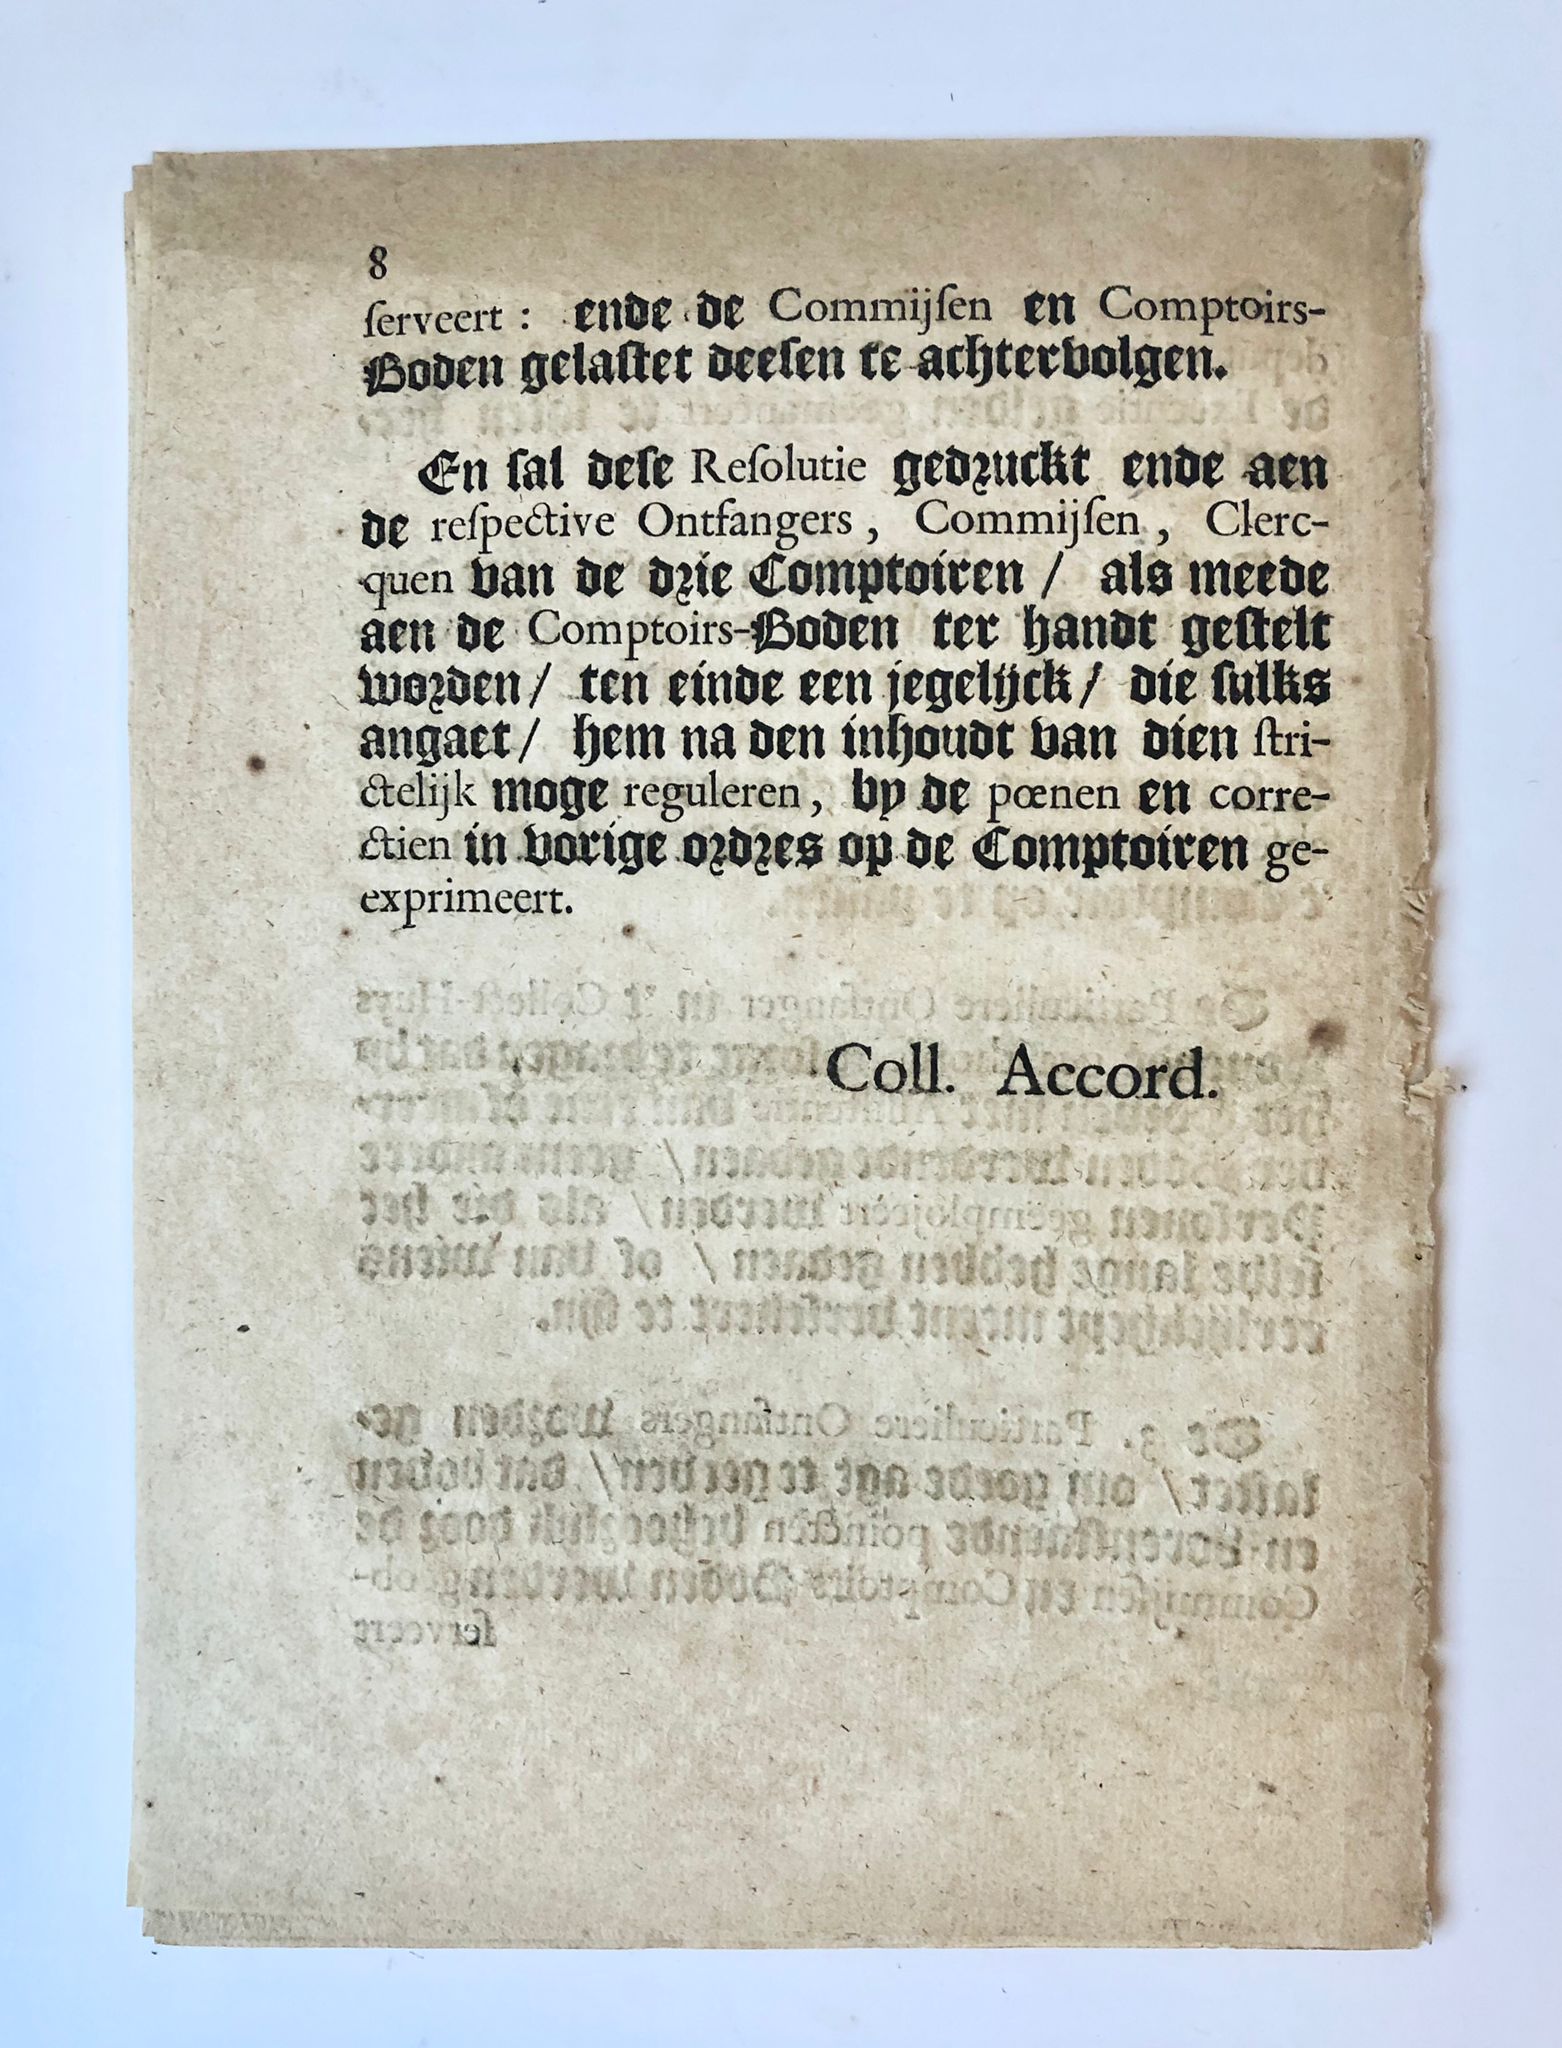 [Groningen, Belasting, Tax [1713]] Extract uit het Register van de Acten en Refolutien der Ed. Mo. Heeren Gedeputeerde Staten van Stadt en Lande, Martis den 21. February 1713, No. 2, [s.n., s.l. [1713], 8 pp.